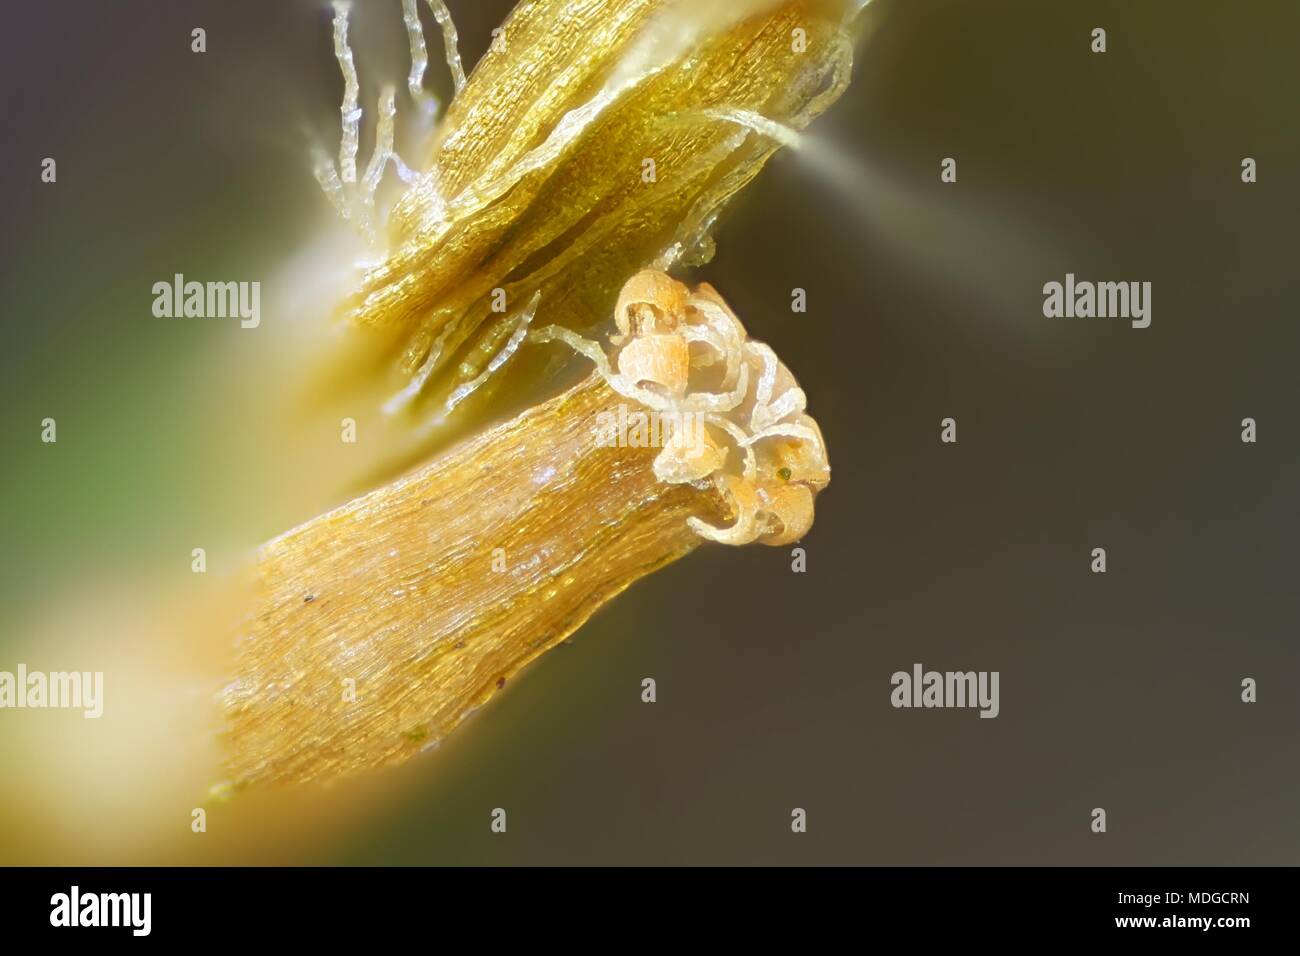 Capsule de Spore lanceolateleaf rock moss, Orthotrichum speciosum,, un microscope droit Banque D'Images